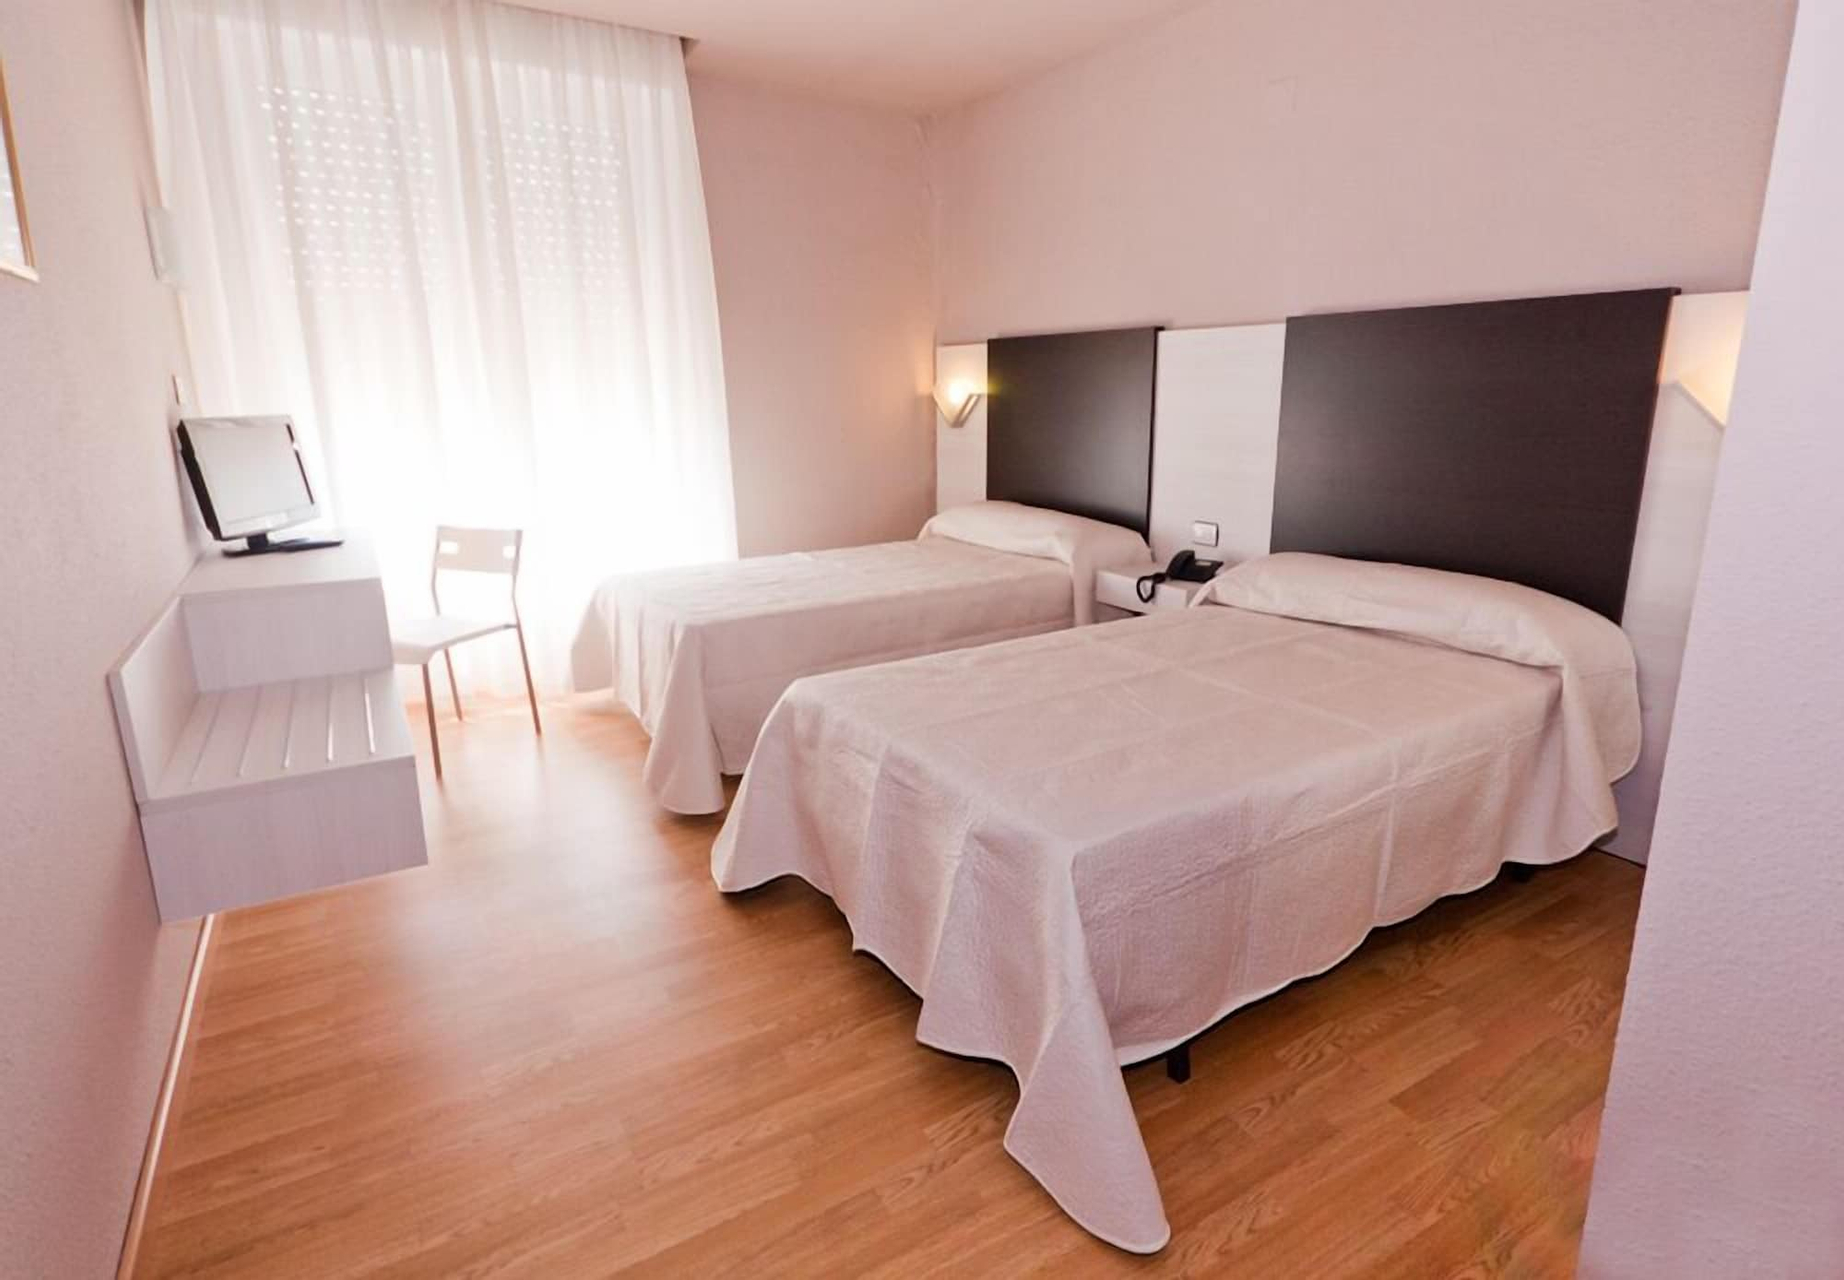 Bedroom 4, Fornos, Zaragoza